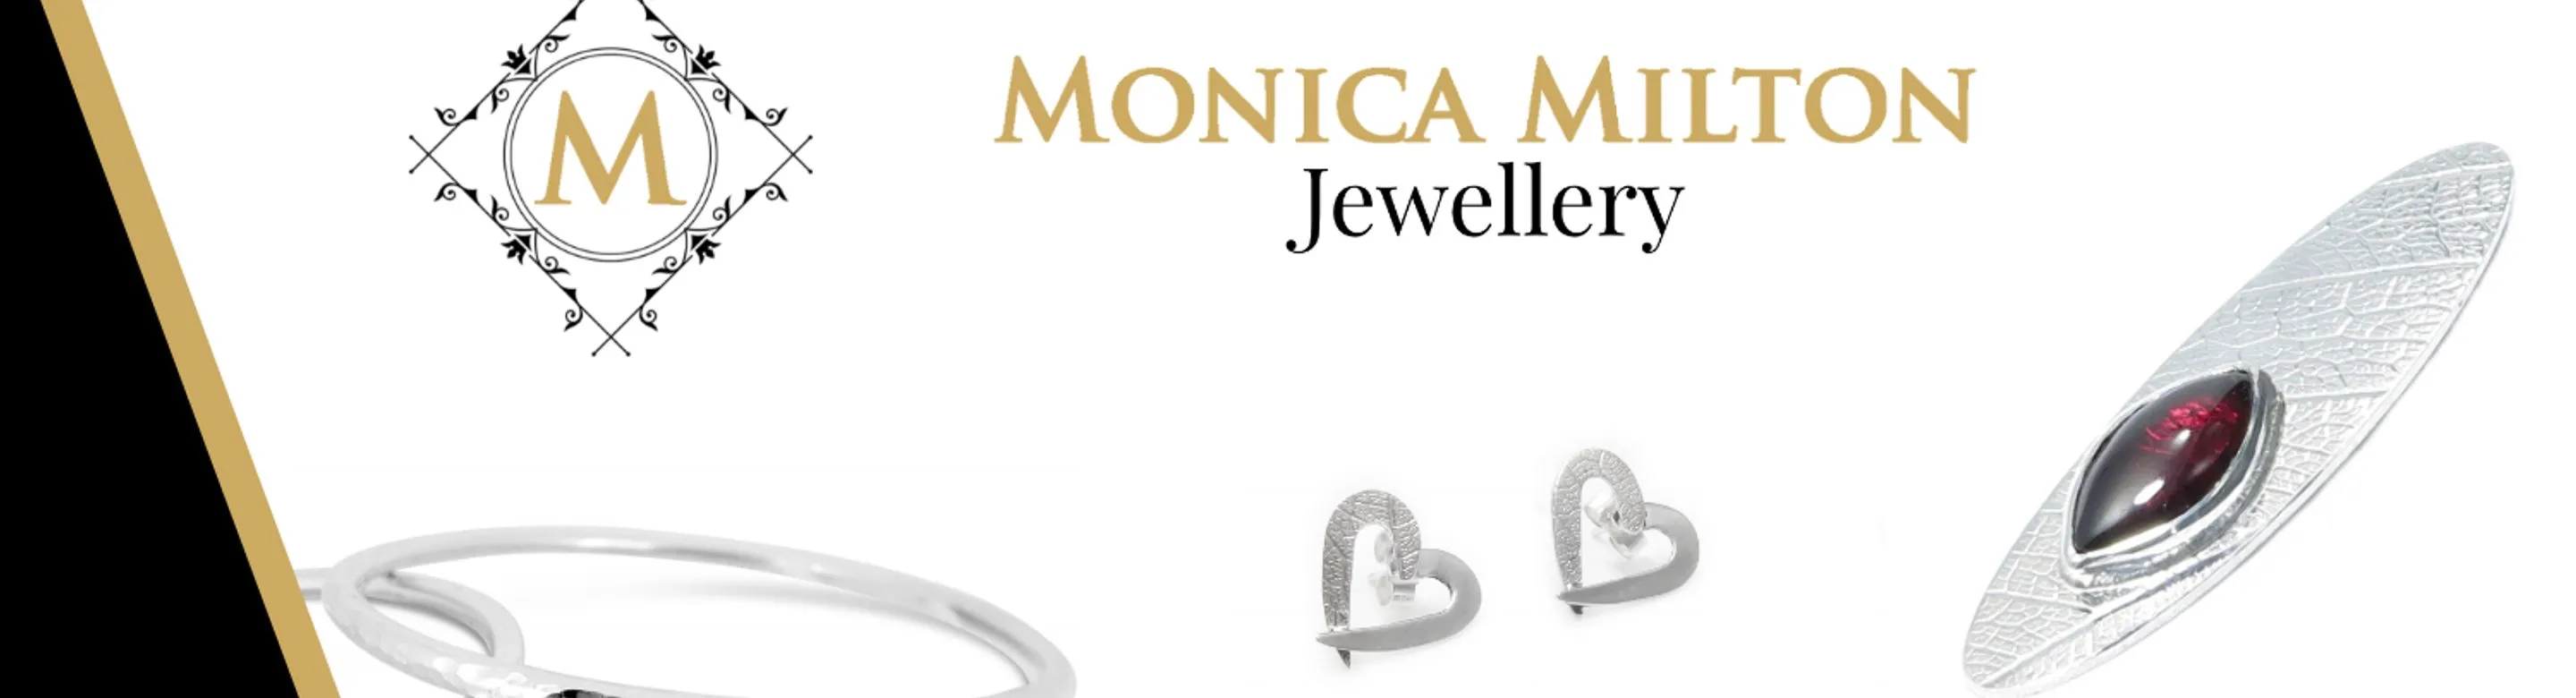 Monica Milton Jewellery